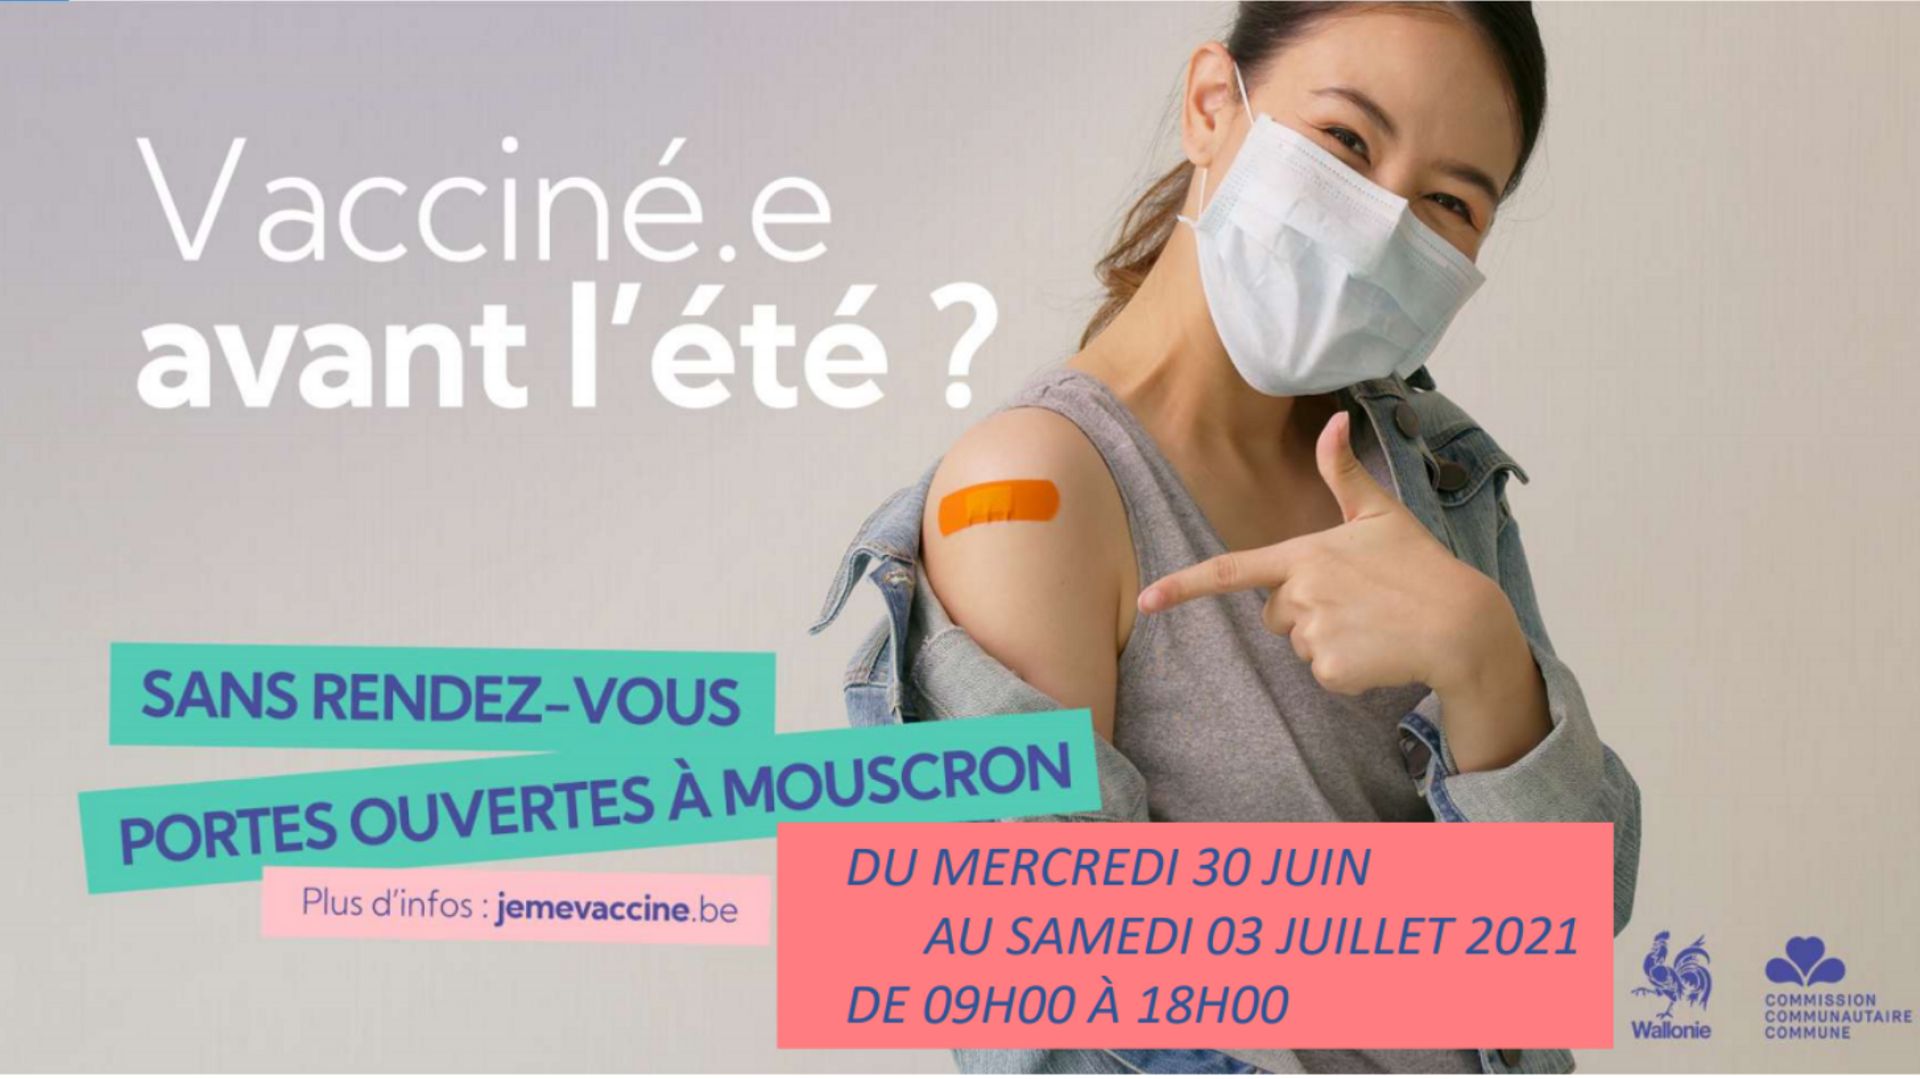 Mouscron : une vaccination sans rendez-vous est proposée au Centr’expo du 30 juin au 3 juillet